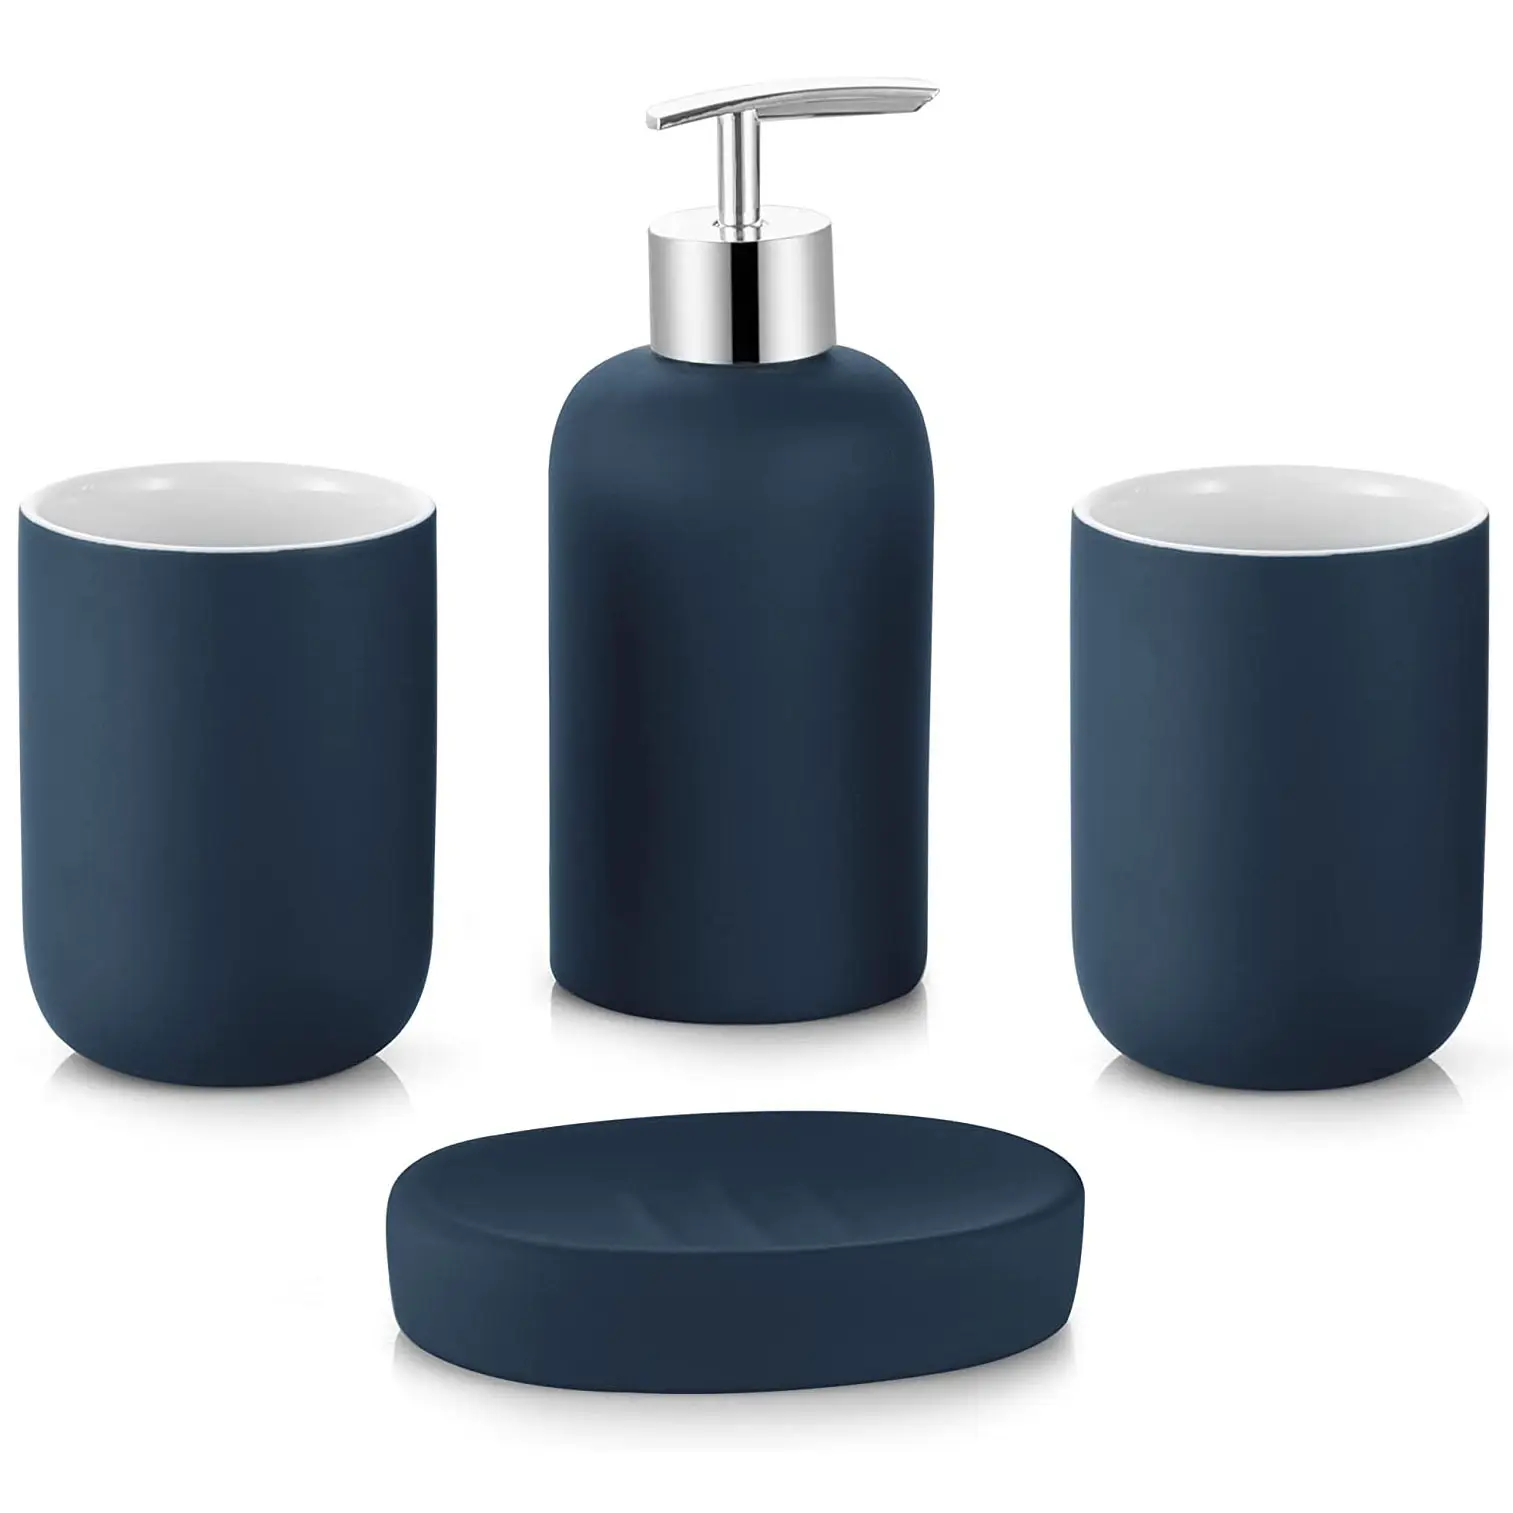 4 adet Vanity tezgah seramik aksesuar seti banyo dekoru losyon dispenseri sabun pompası, 2 bardak ve sabunluk